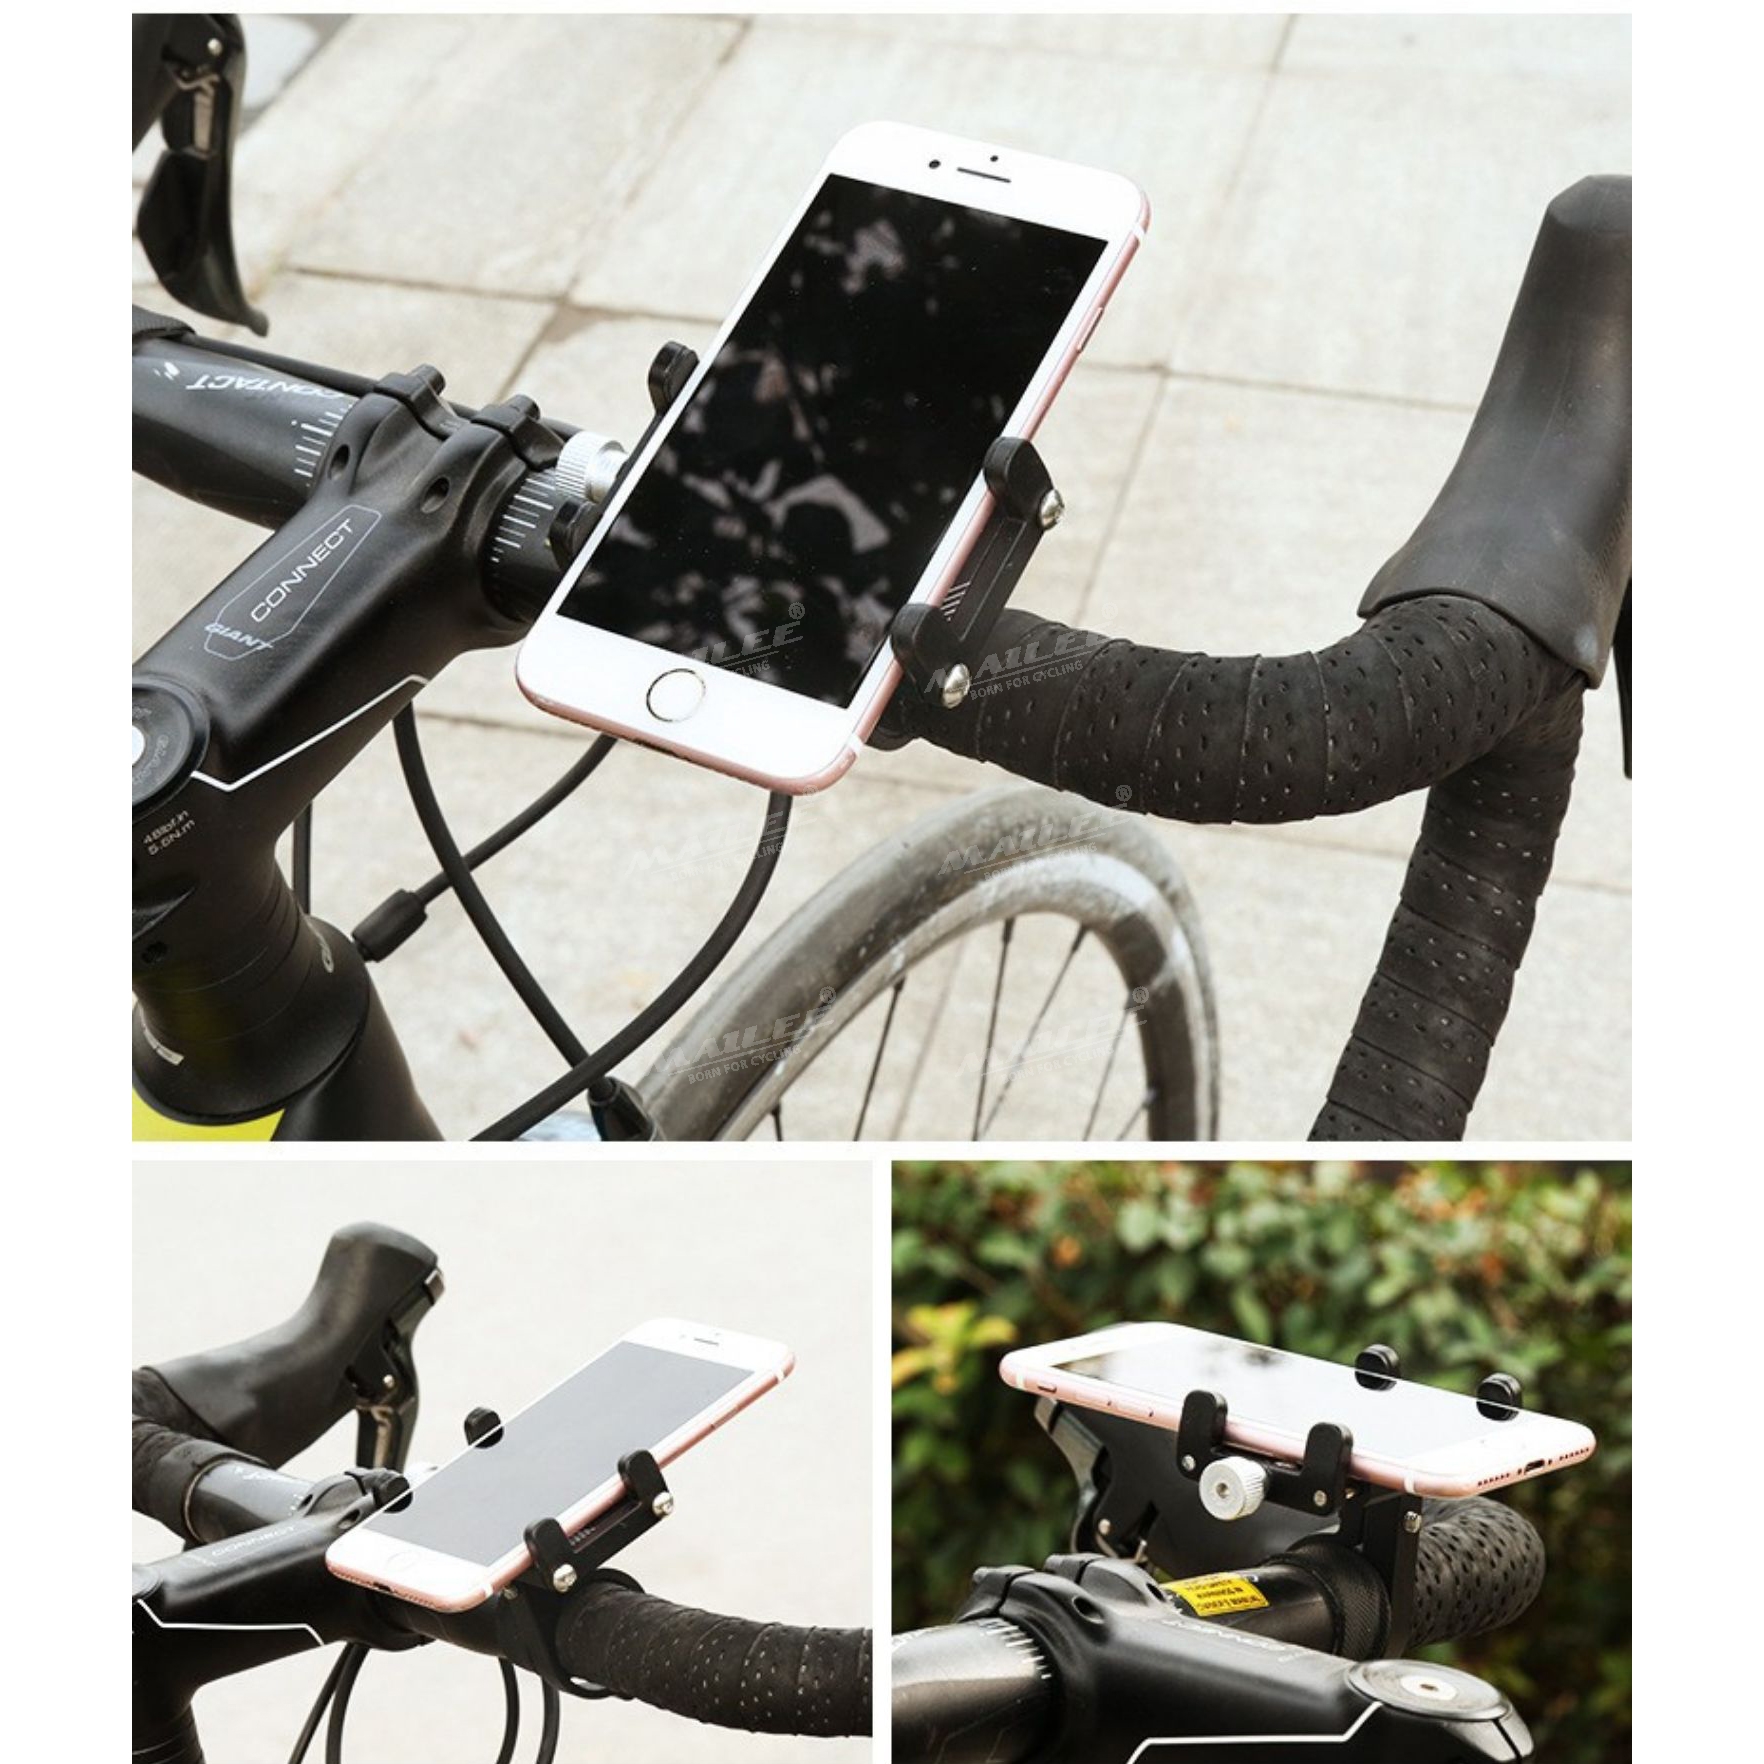 Giá đỡ điện thoại xe đạp MOBILE BRACKET gắn tay lái SS-044 cho điện thoại dưới 6.8 inch, chất liệu Nhôm, phù hợp đường kính ghi đông 22.2mm-31.8mm - Mai Lee